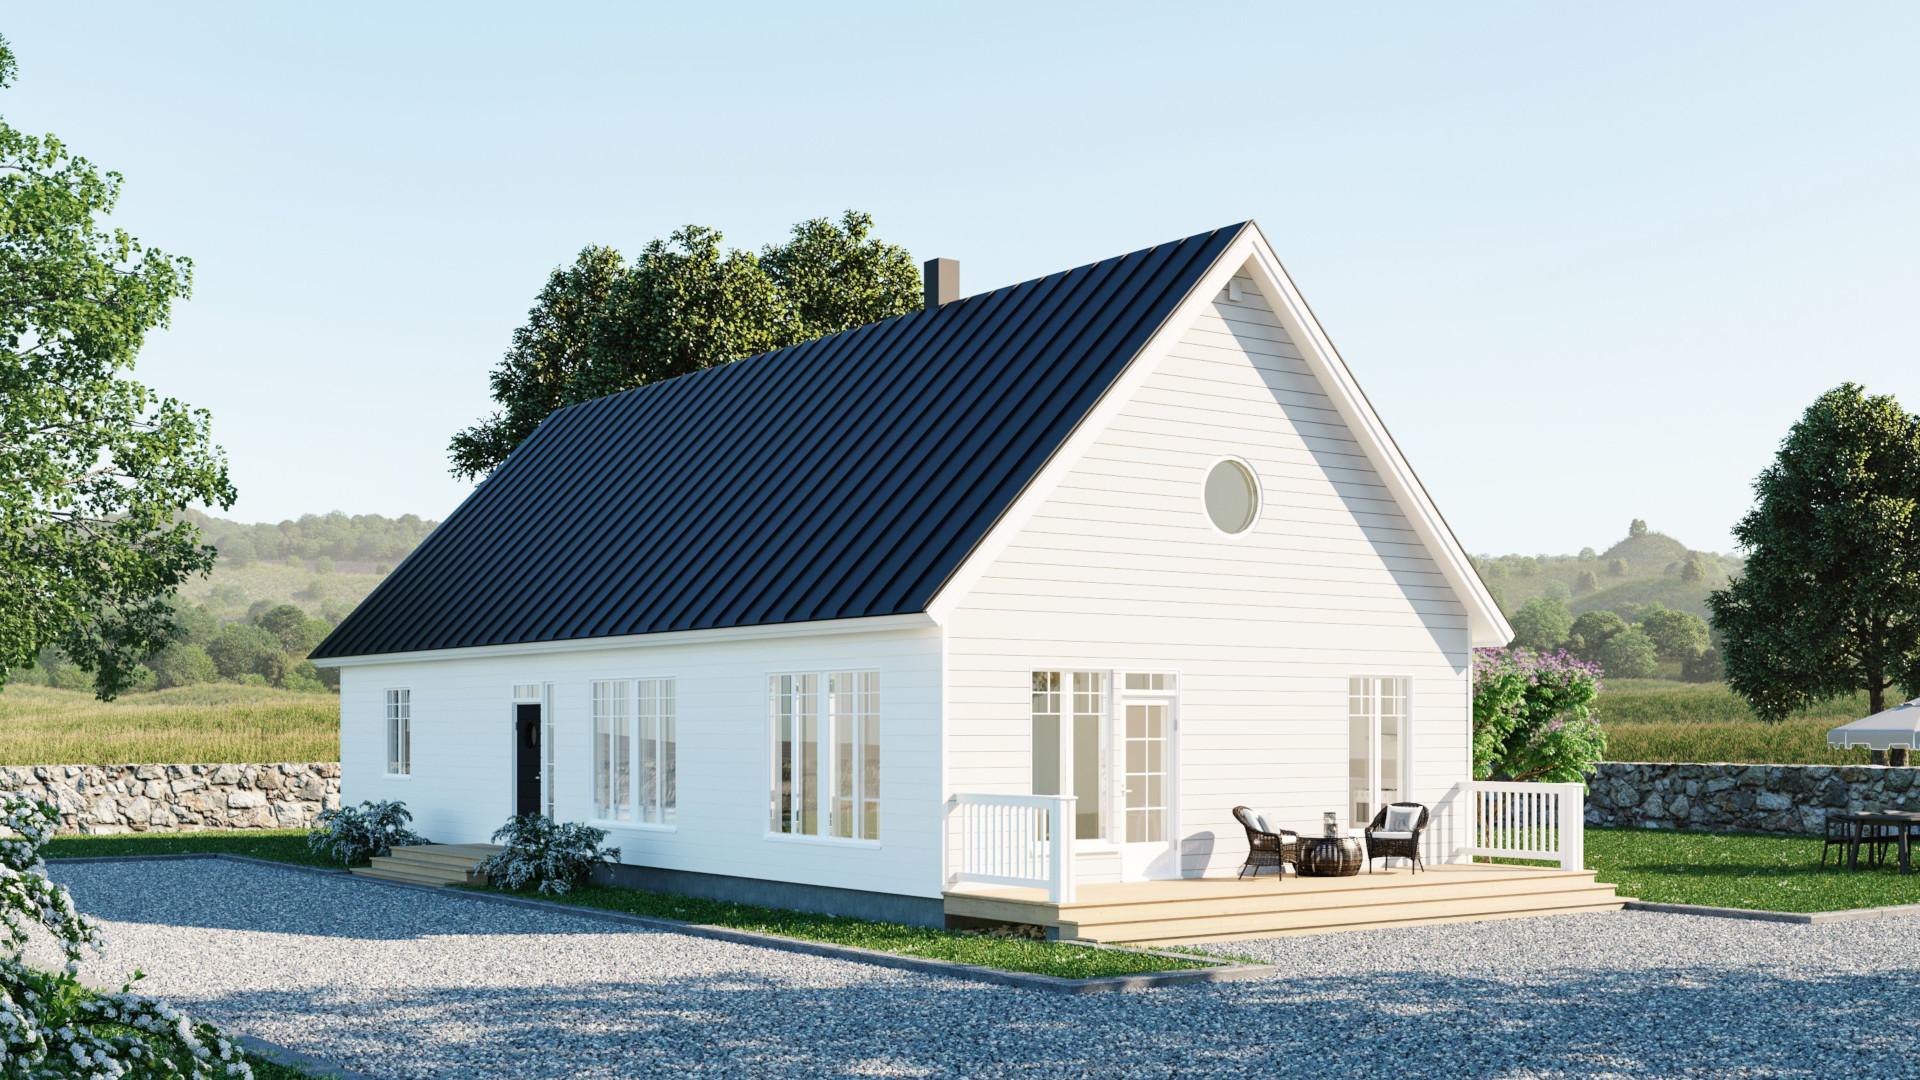 Skoone 135 edustaa perinteistä pohjoismaisen skandinaavista rakennustyyliä.